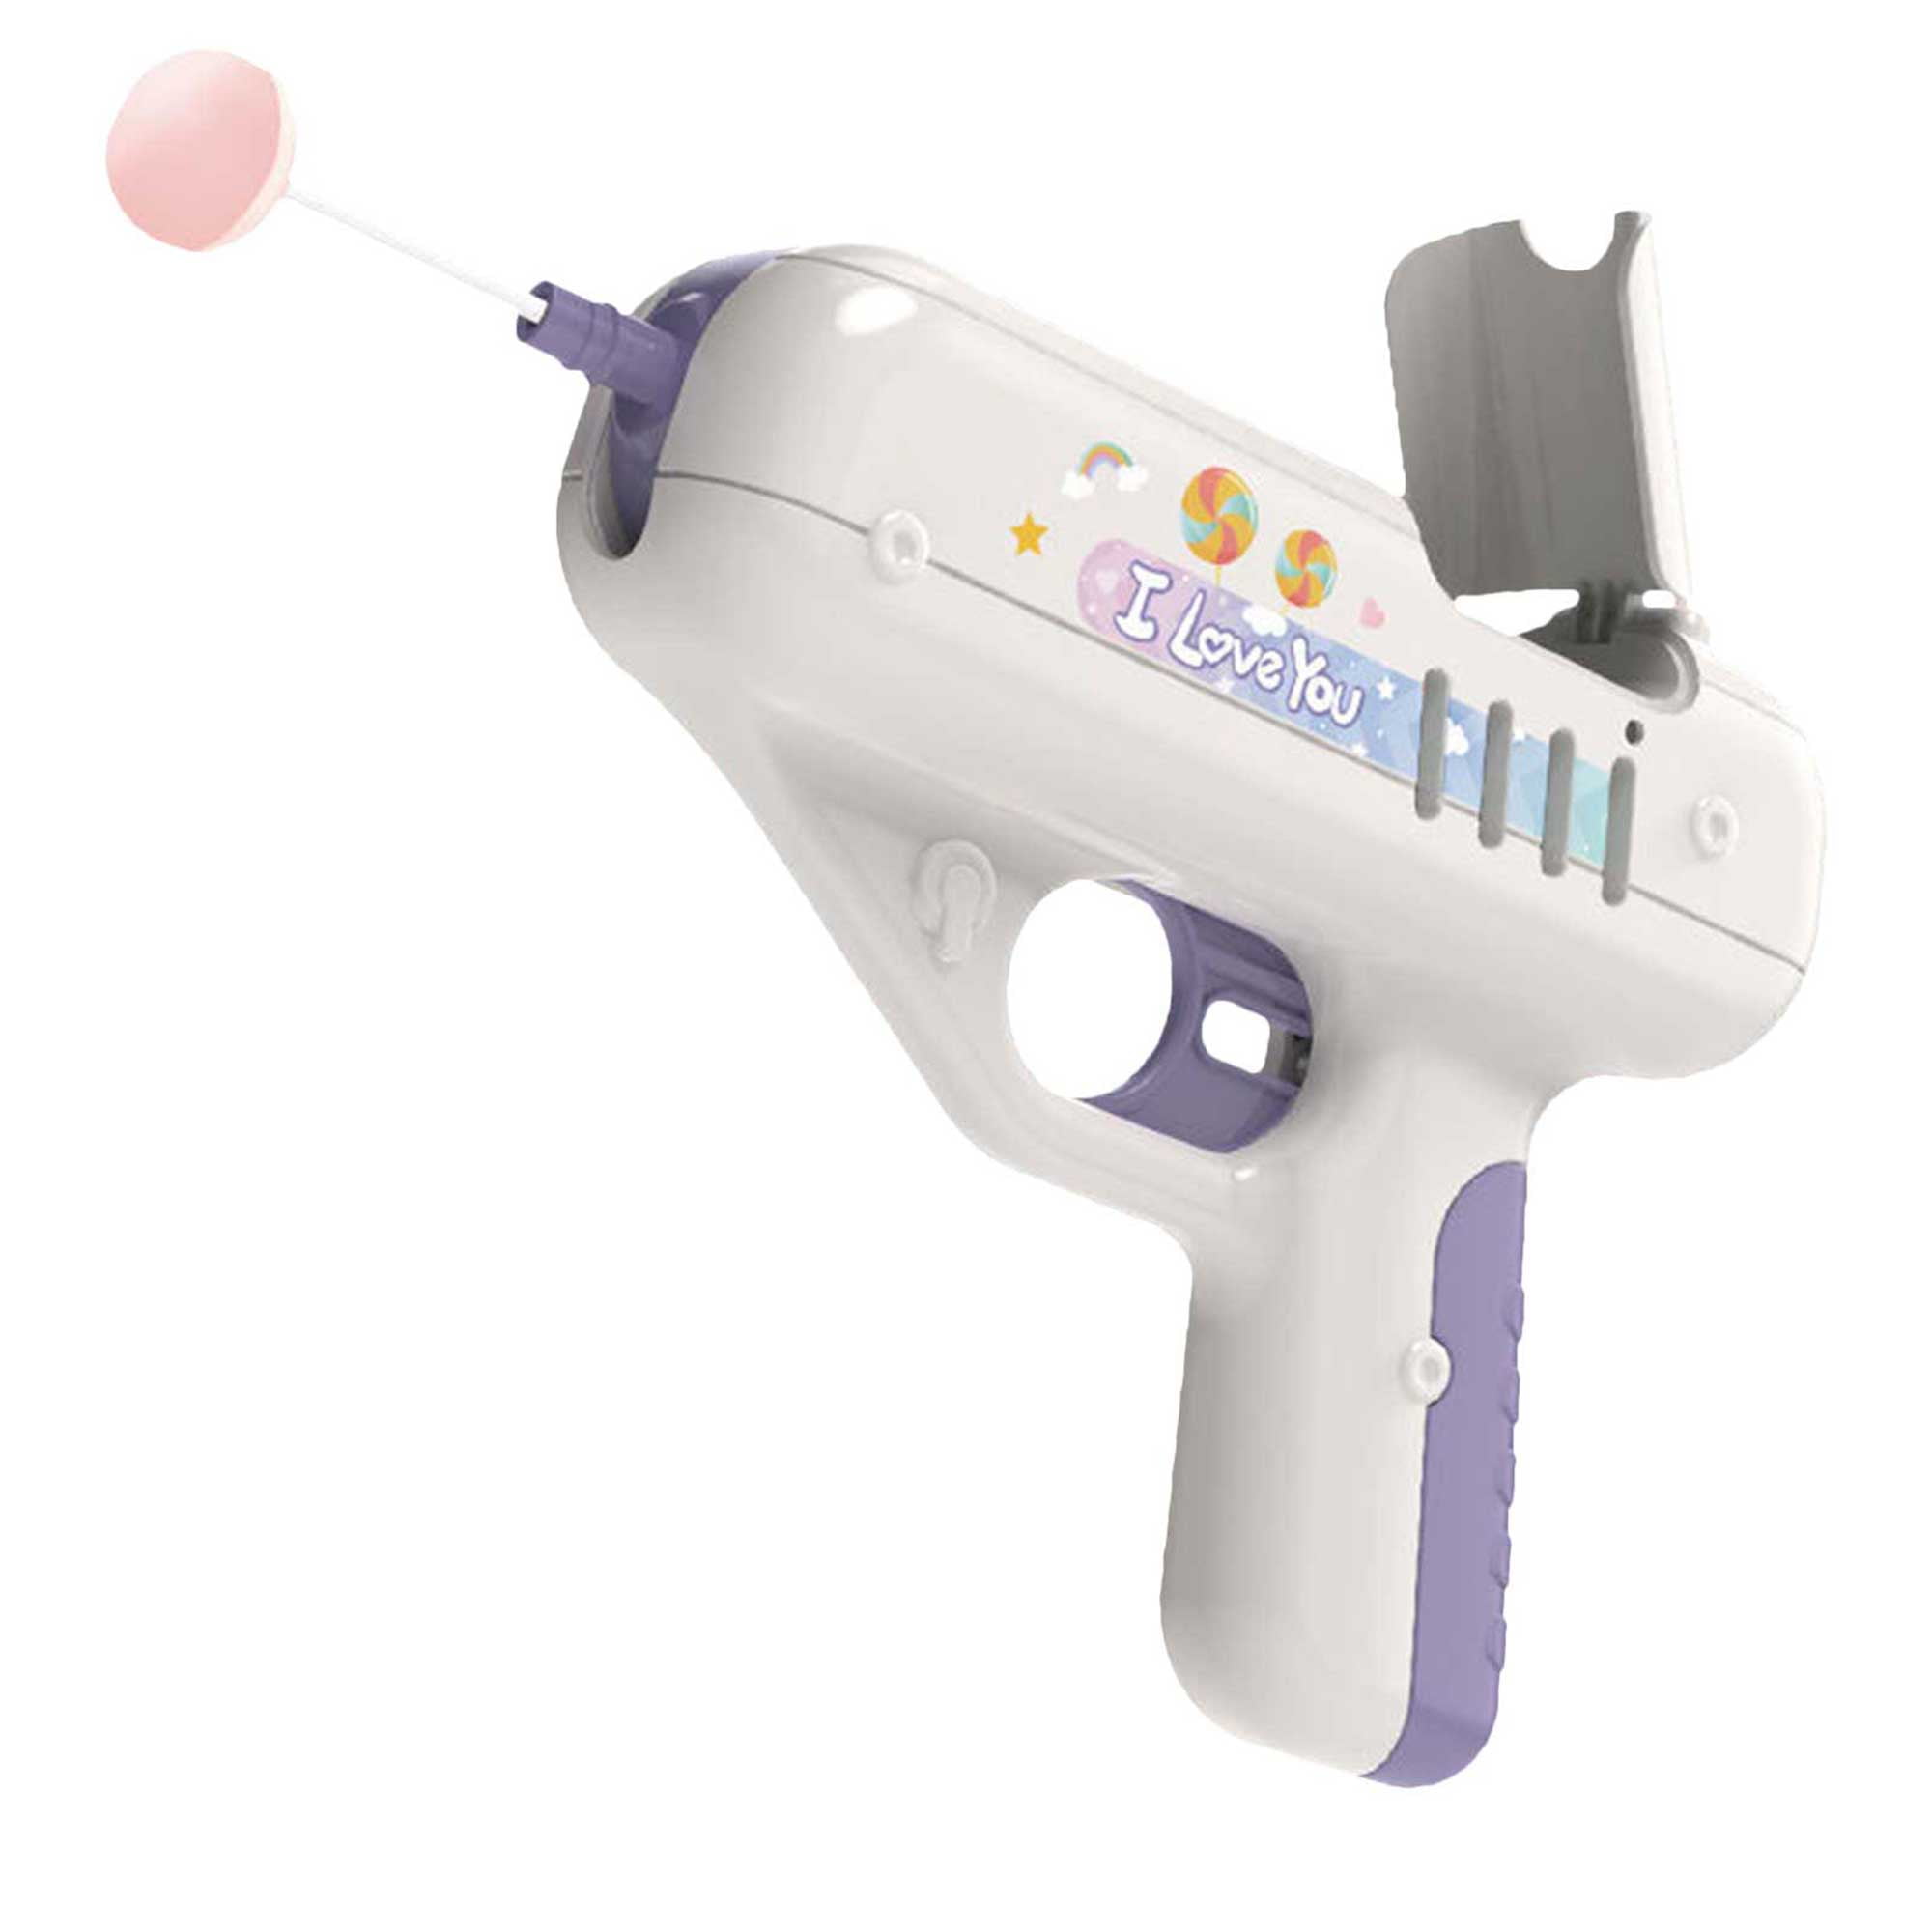 Details about   NEW Lollipop Gun Children'S Candy Gun Toy Surprise Creative Boy Girl Gift In Box 